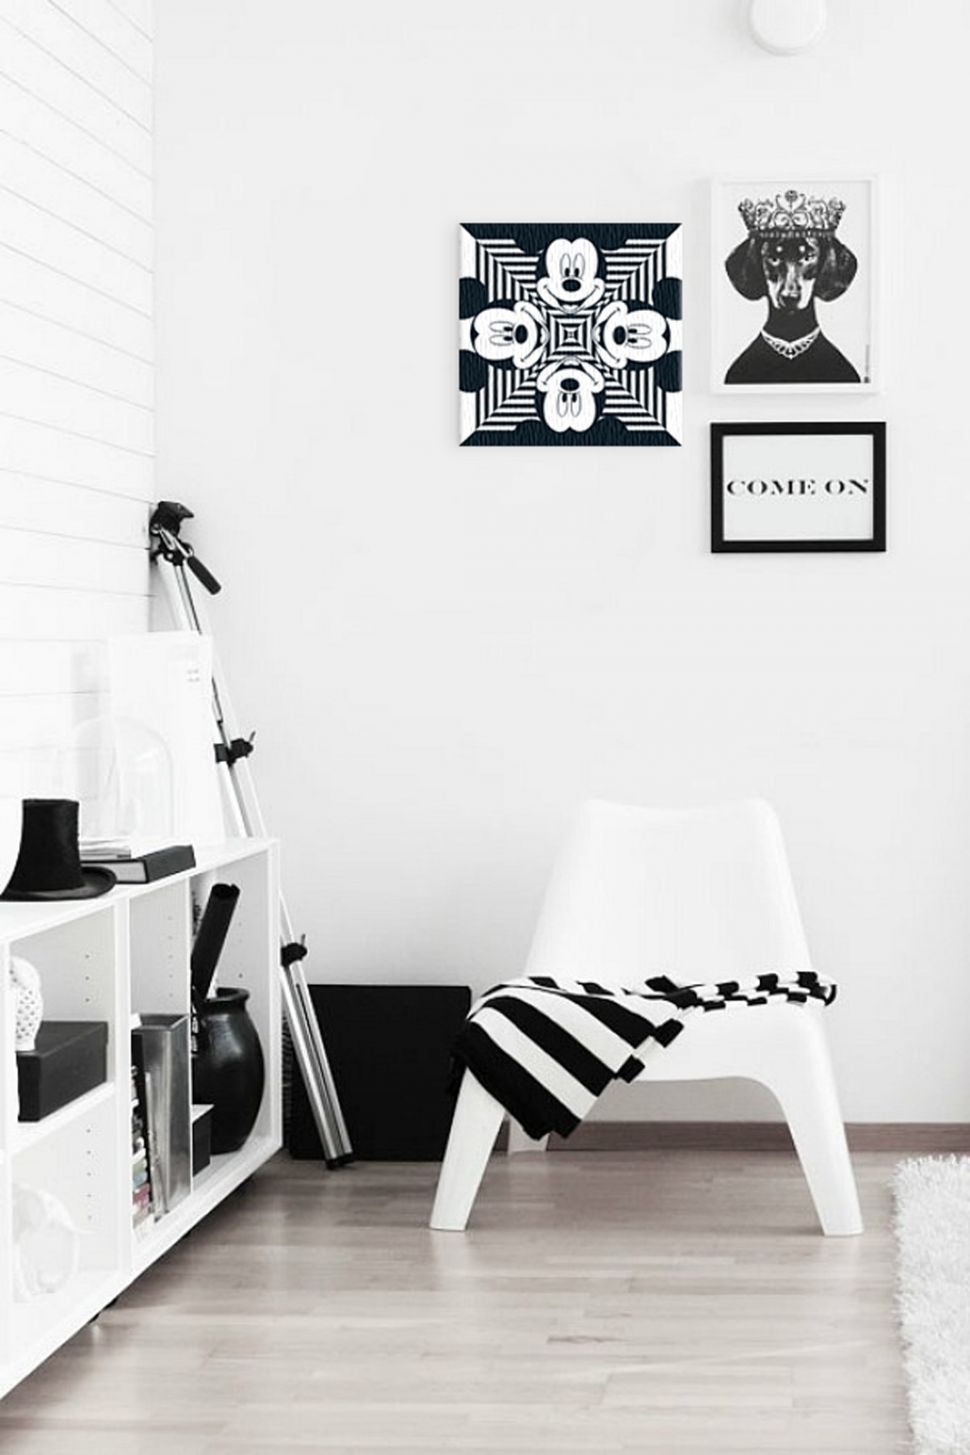 Obraz na płótnie w biało-czarnych barwach z Myszką Miki powieszony na białej ścianie